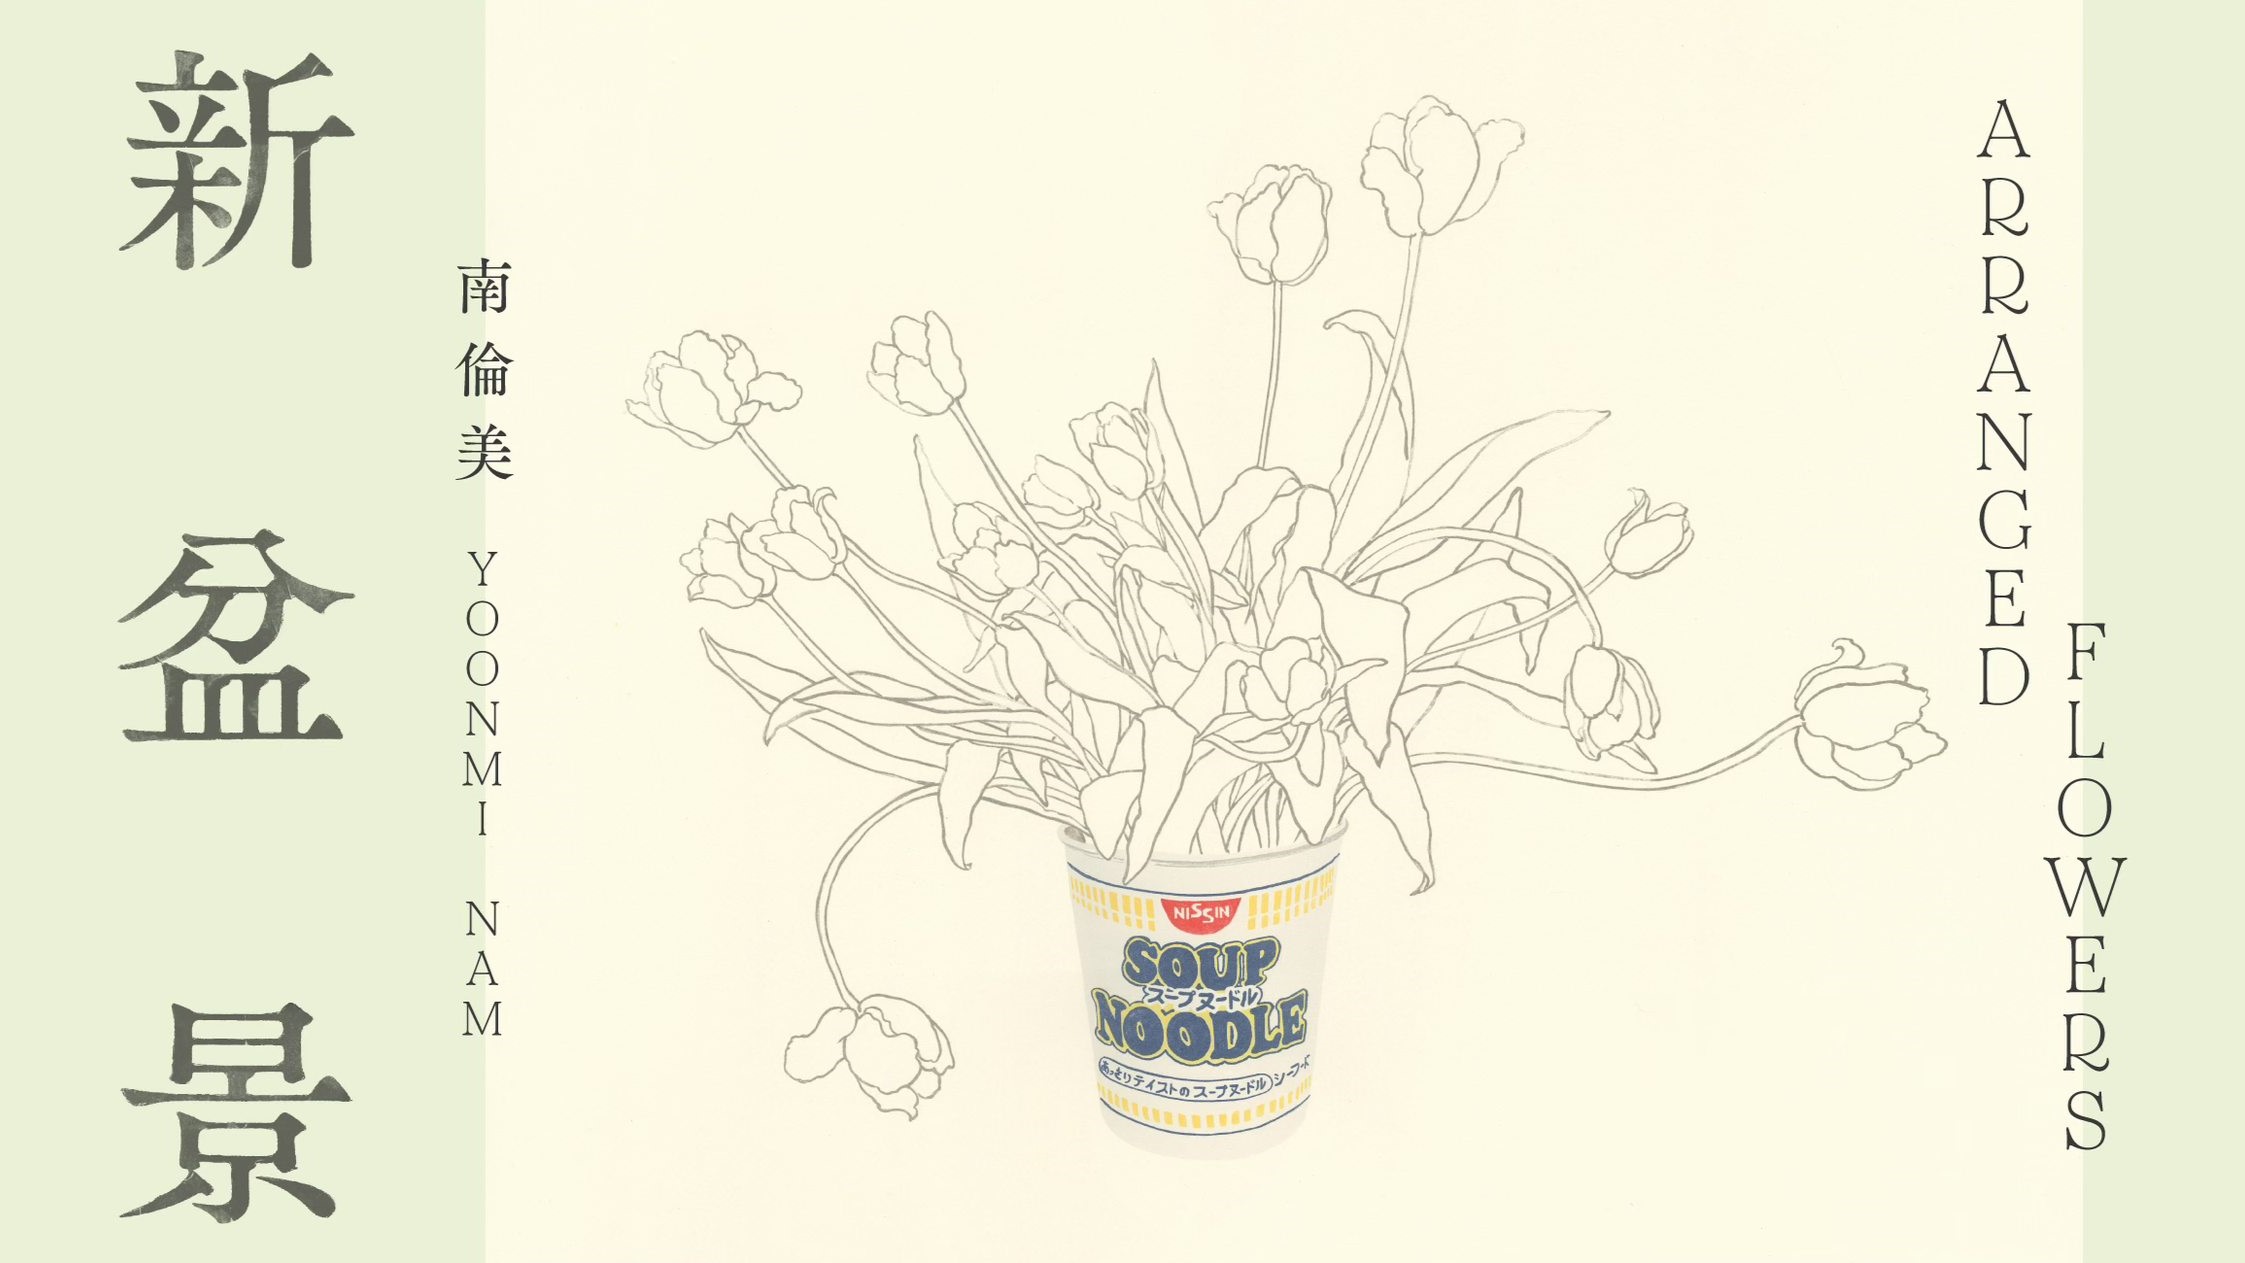 即食麵碗中的永恆之花：南倫美「新盆景」版畫展探討時間謎題